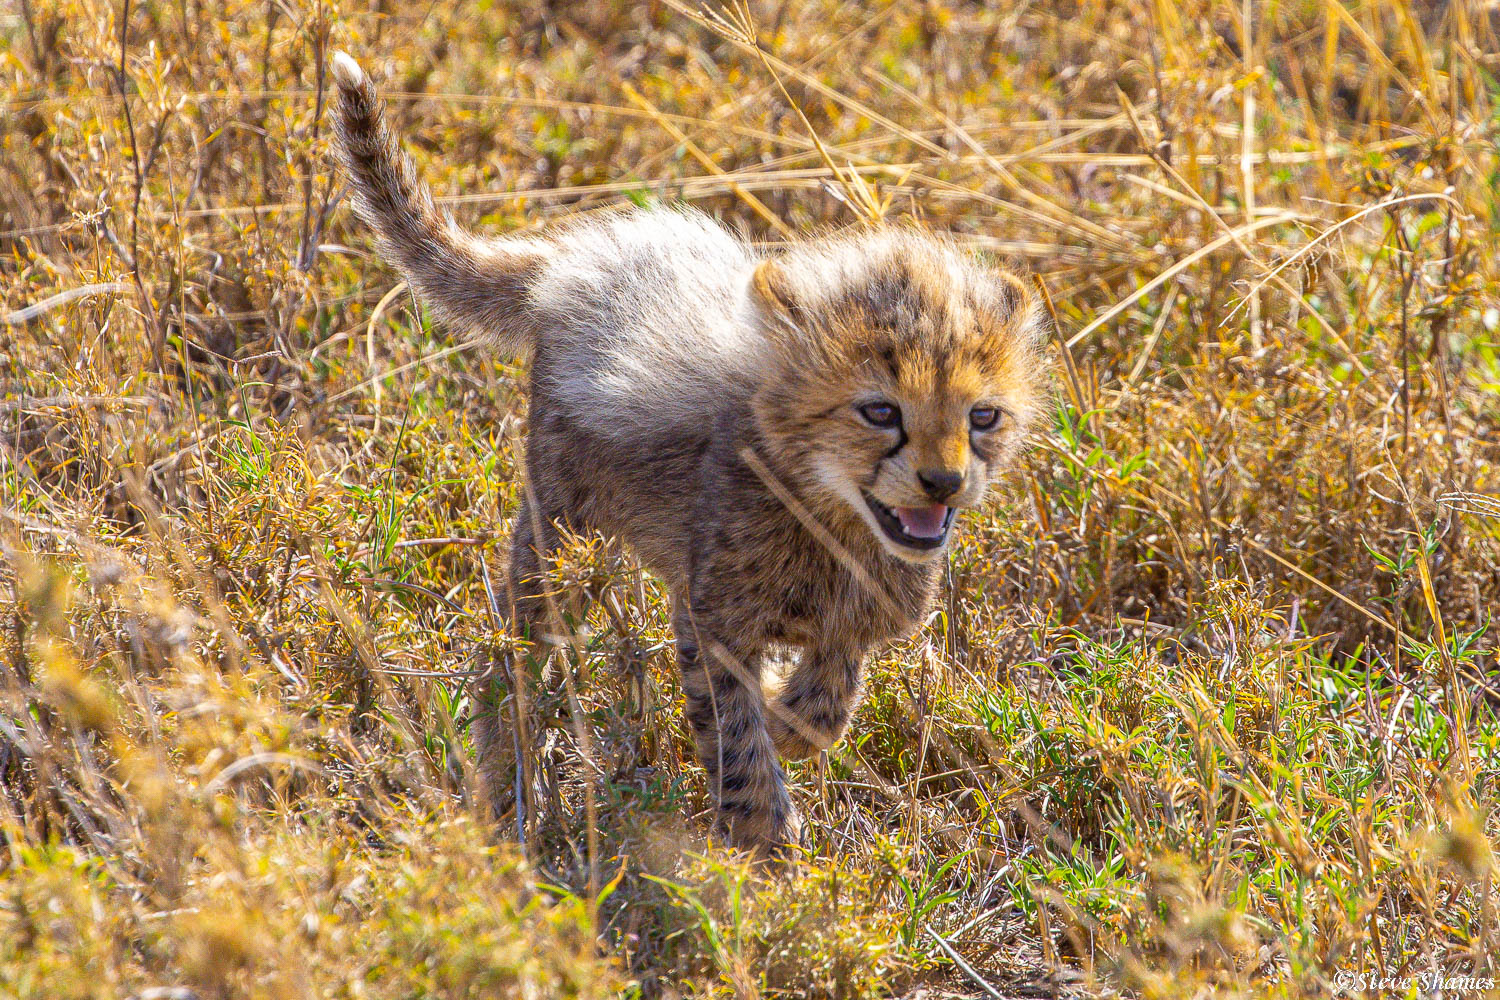 A little fluffy backed cheetah cub, running through the grass.